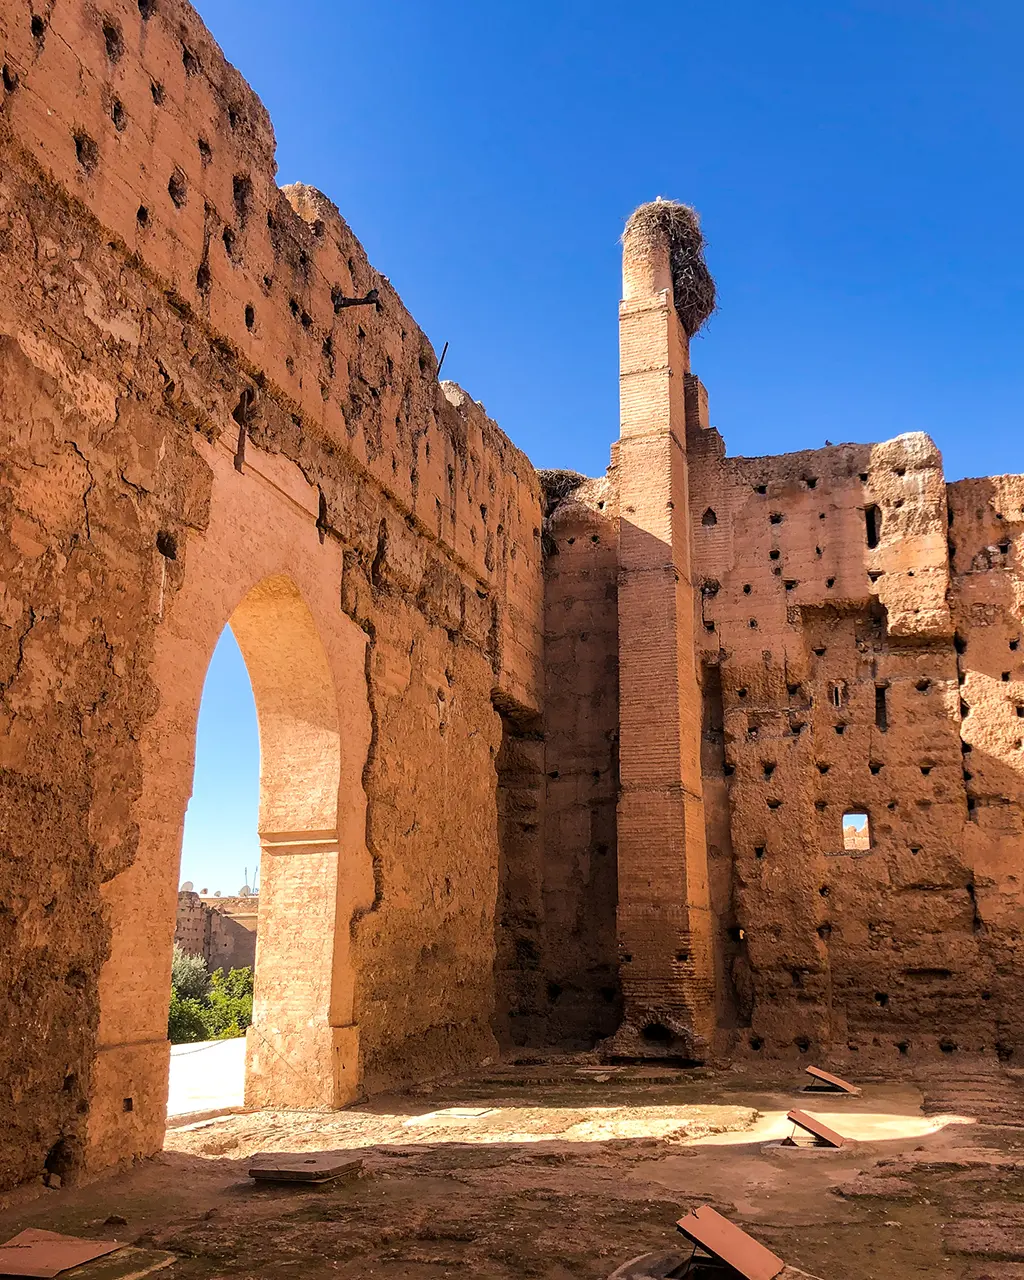 Les ruines du palais El Badi à Marrackech, surmontées d'un nid de cigognes